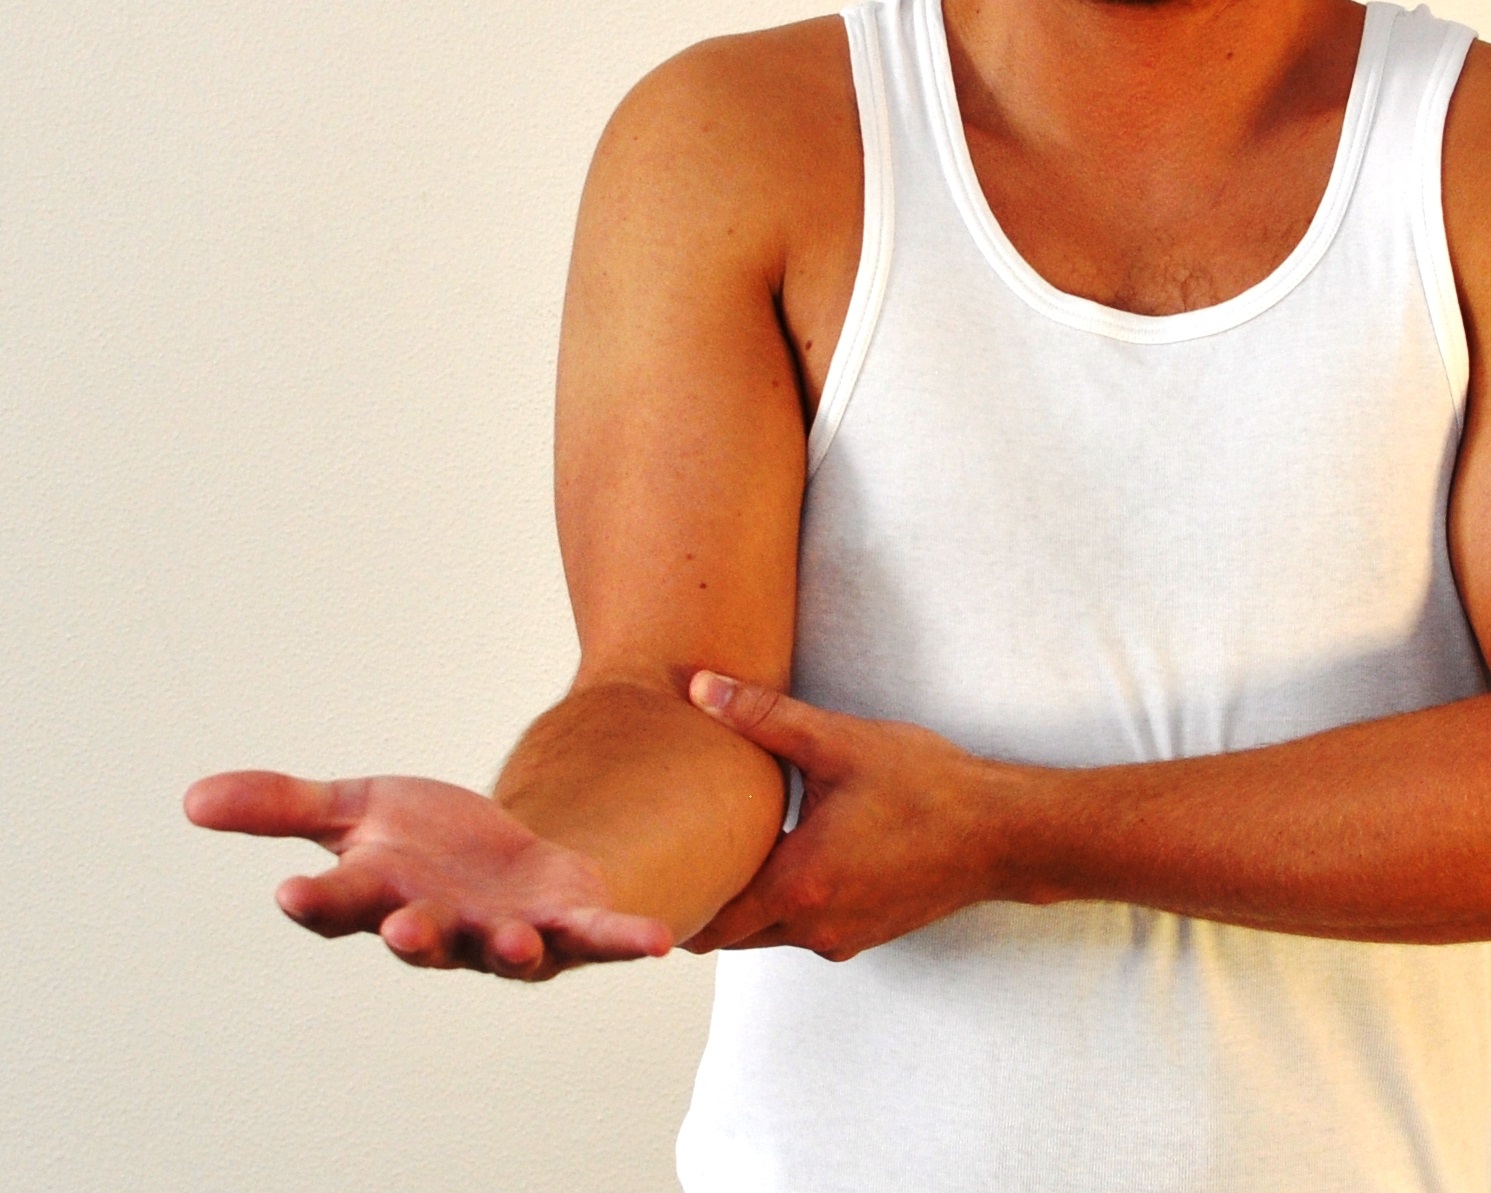 Bøjet arm - håndfladen vender opad og fingre strakte og spredte.